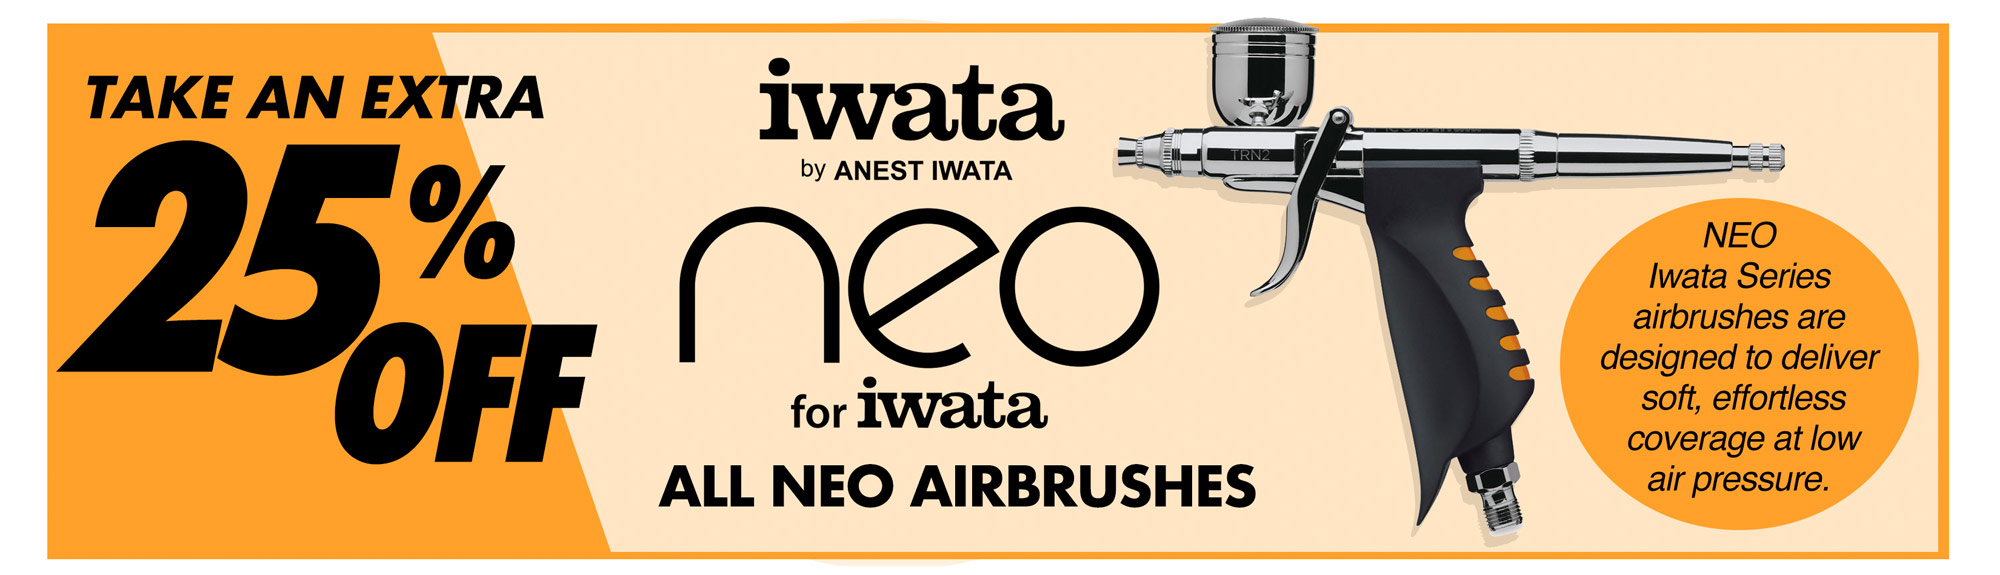 Iwata Neo Airbrushes